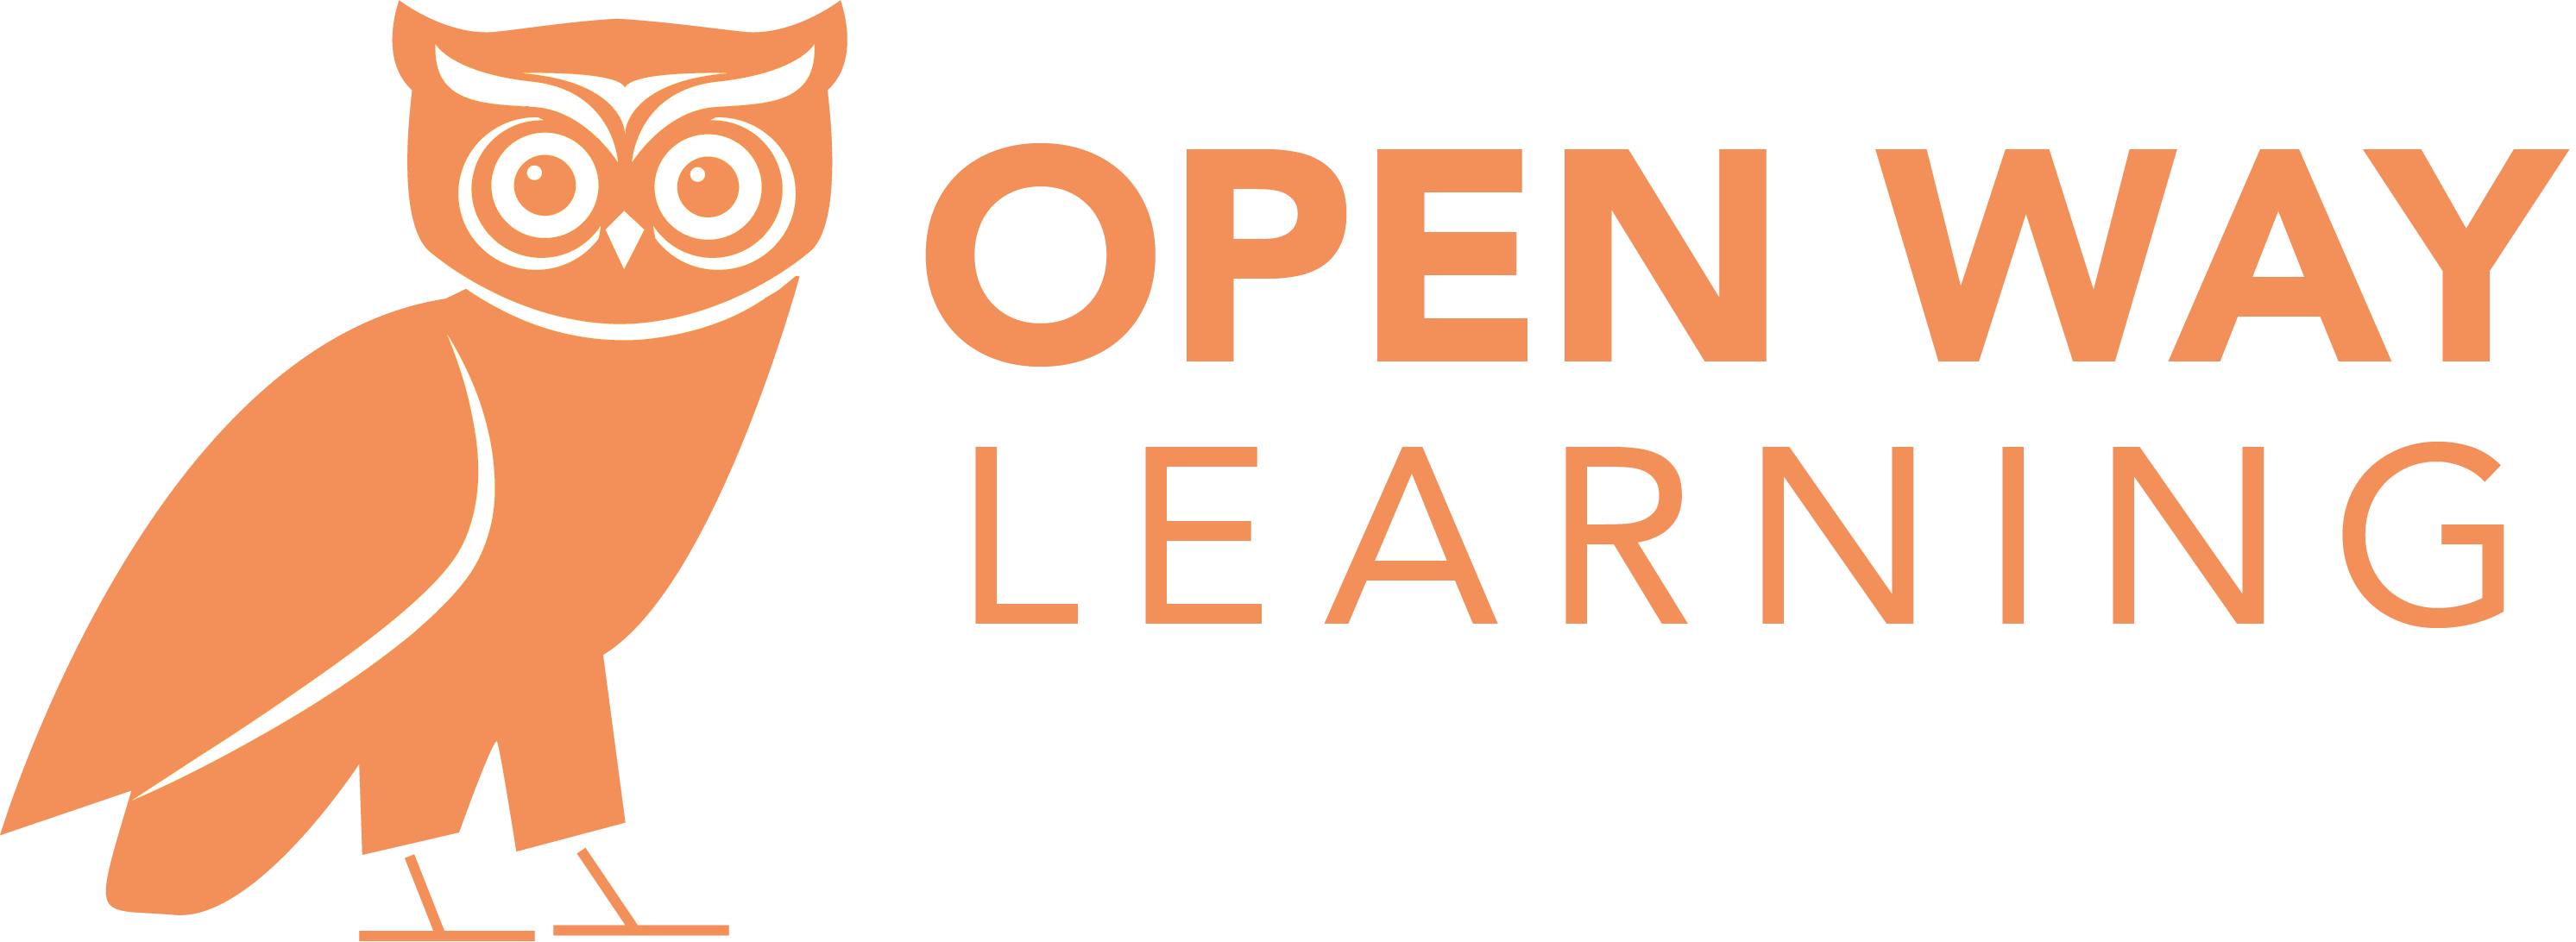 Open Way Learning logo